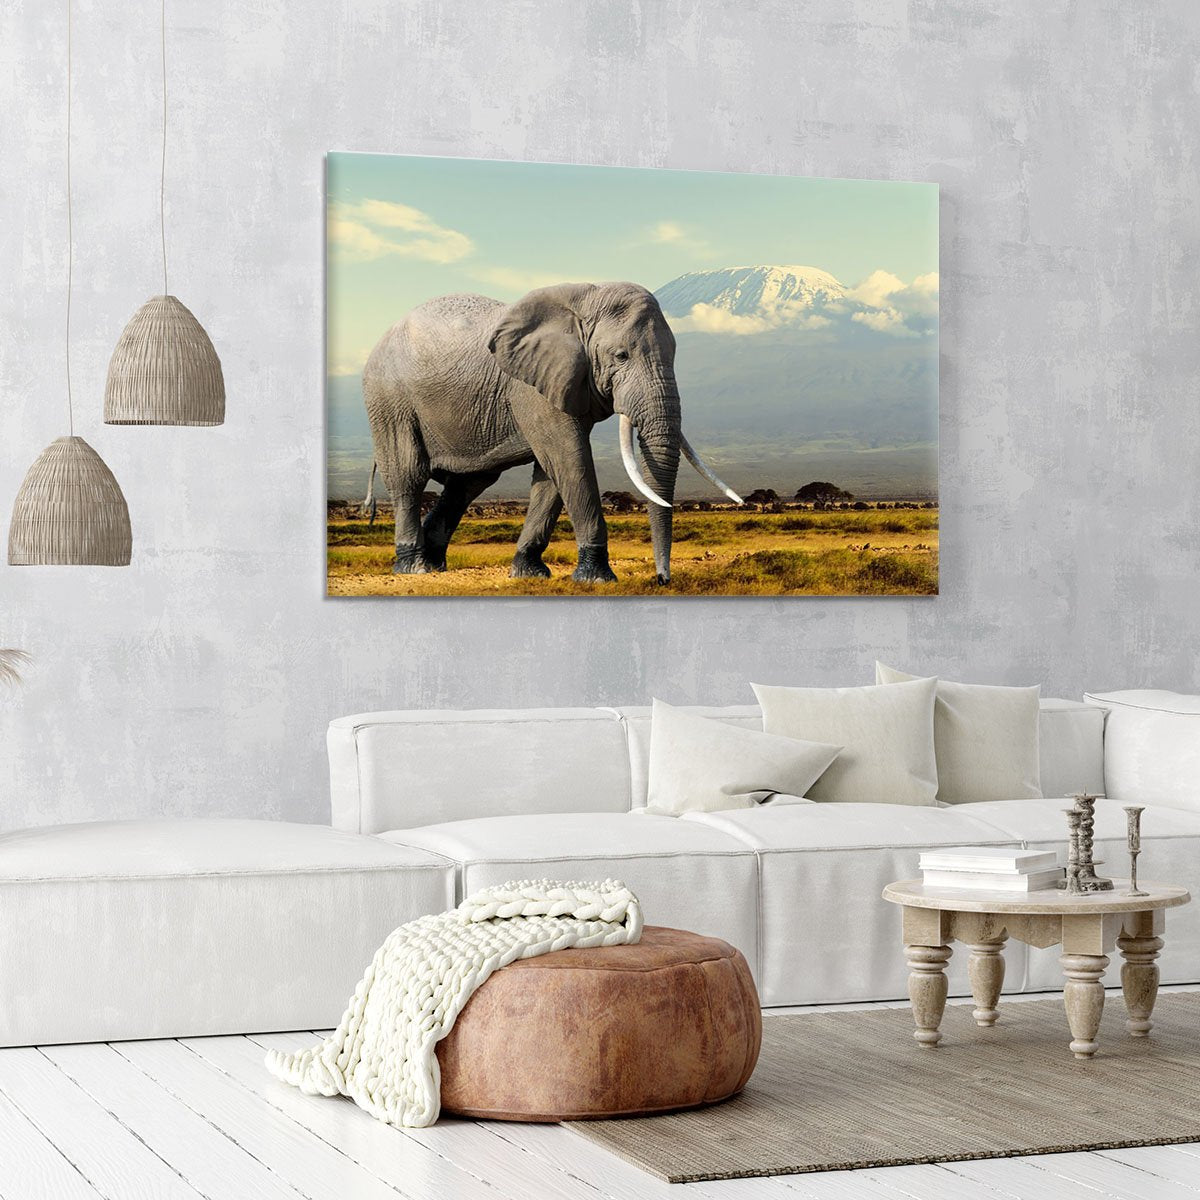 Elephant on Kilimajaro mount Canvas Print or Poster